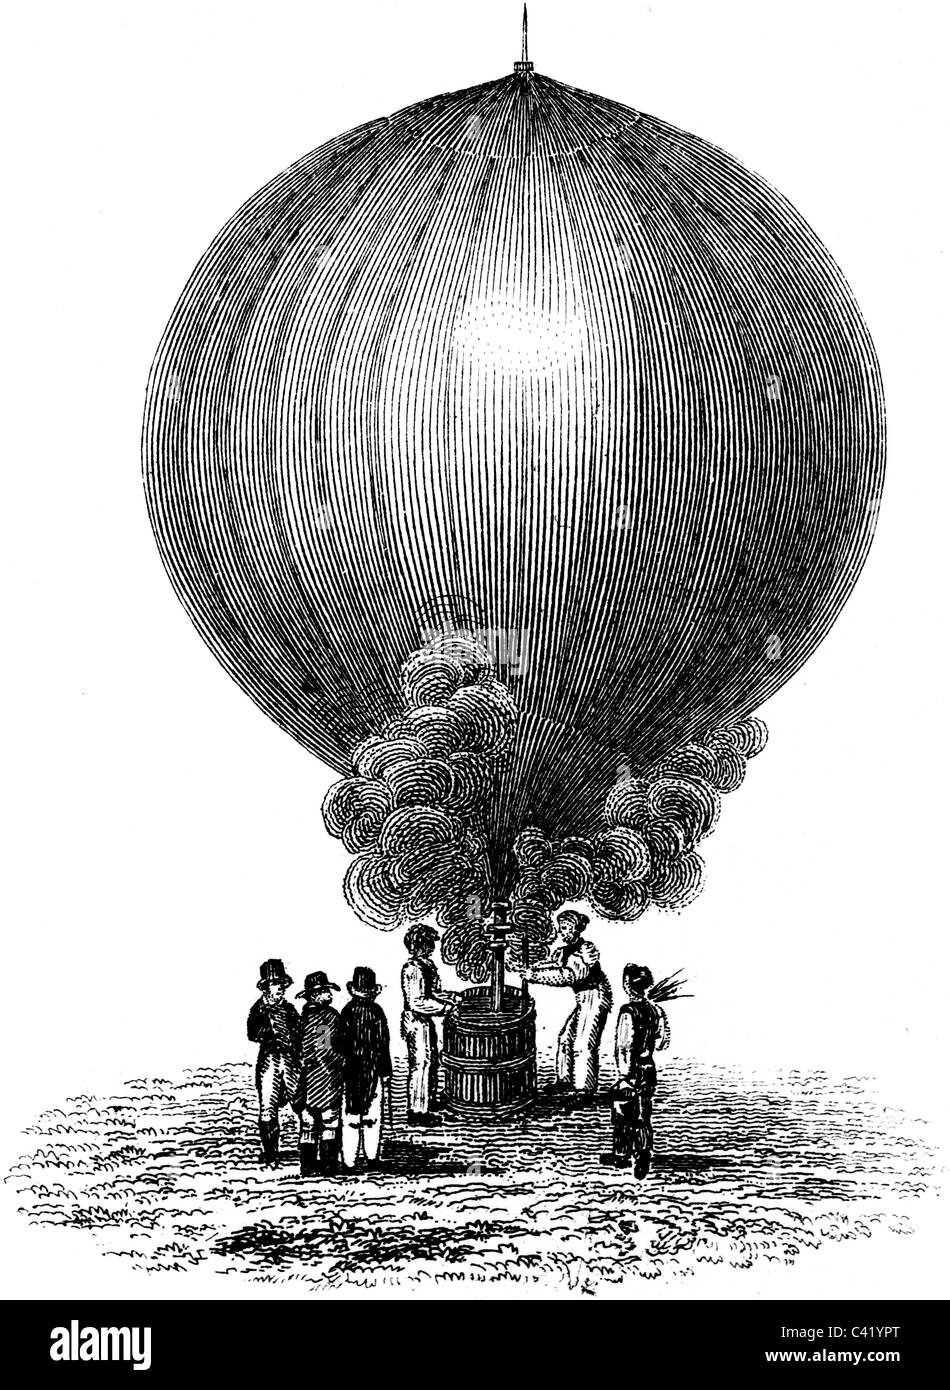 Buchillustration des 19. Jahrhunderts, 9. Ausgabe der Encyclopaedia Britannica, Heißluftballon (1875) entnommen Stockfoto